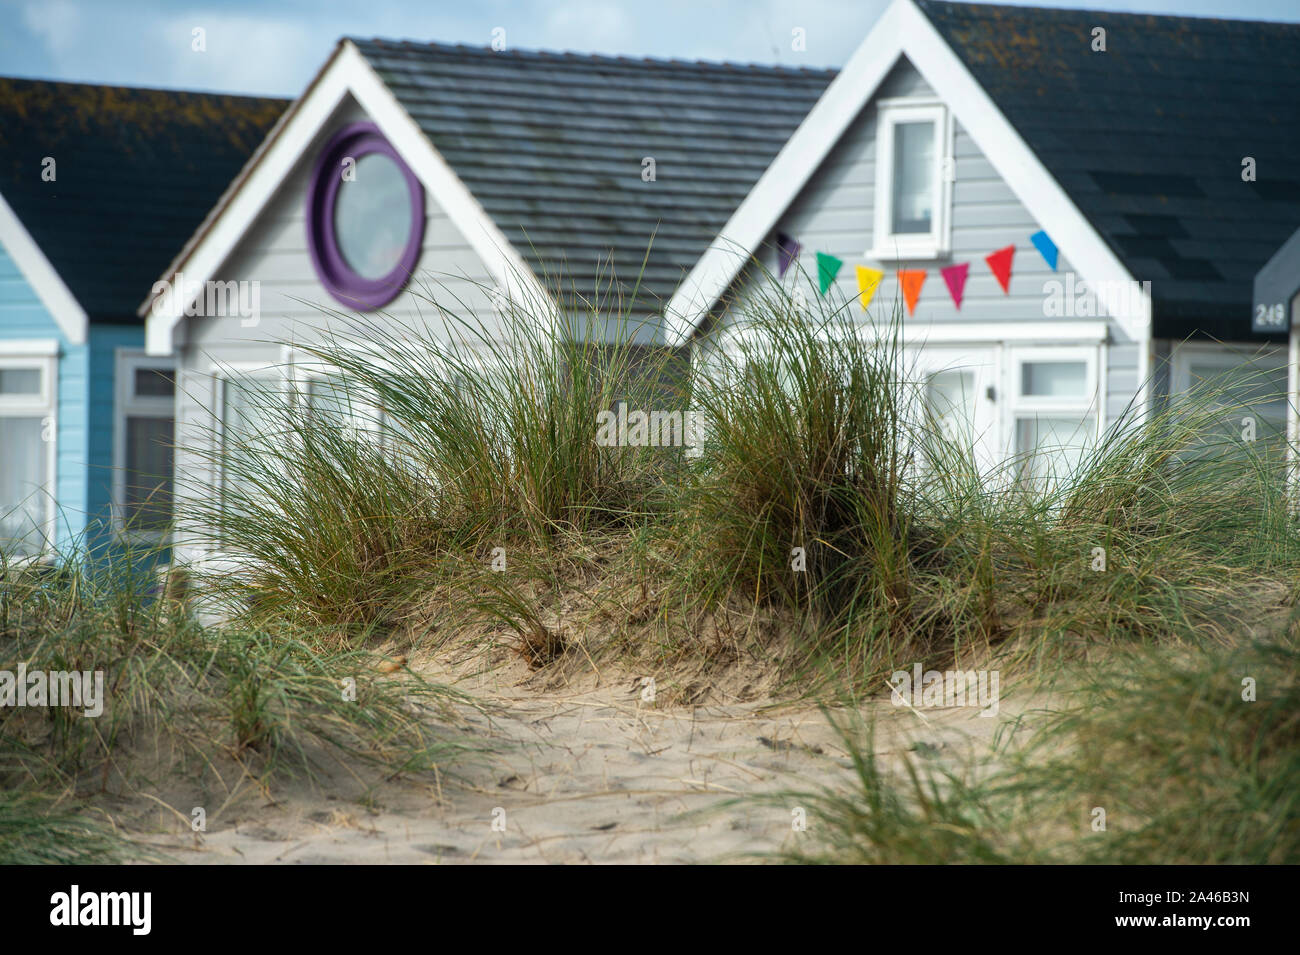 Holiday Beach cabañas a lo largo del pintoresco Mudeford escupen Hengistbury head en Dorset. Las cabañas de playa son considerados como los más caros cabañas de playa en el país, a pesar de no tener agua potable, instalaciones sanitarias y de electricidad. Foto de stock